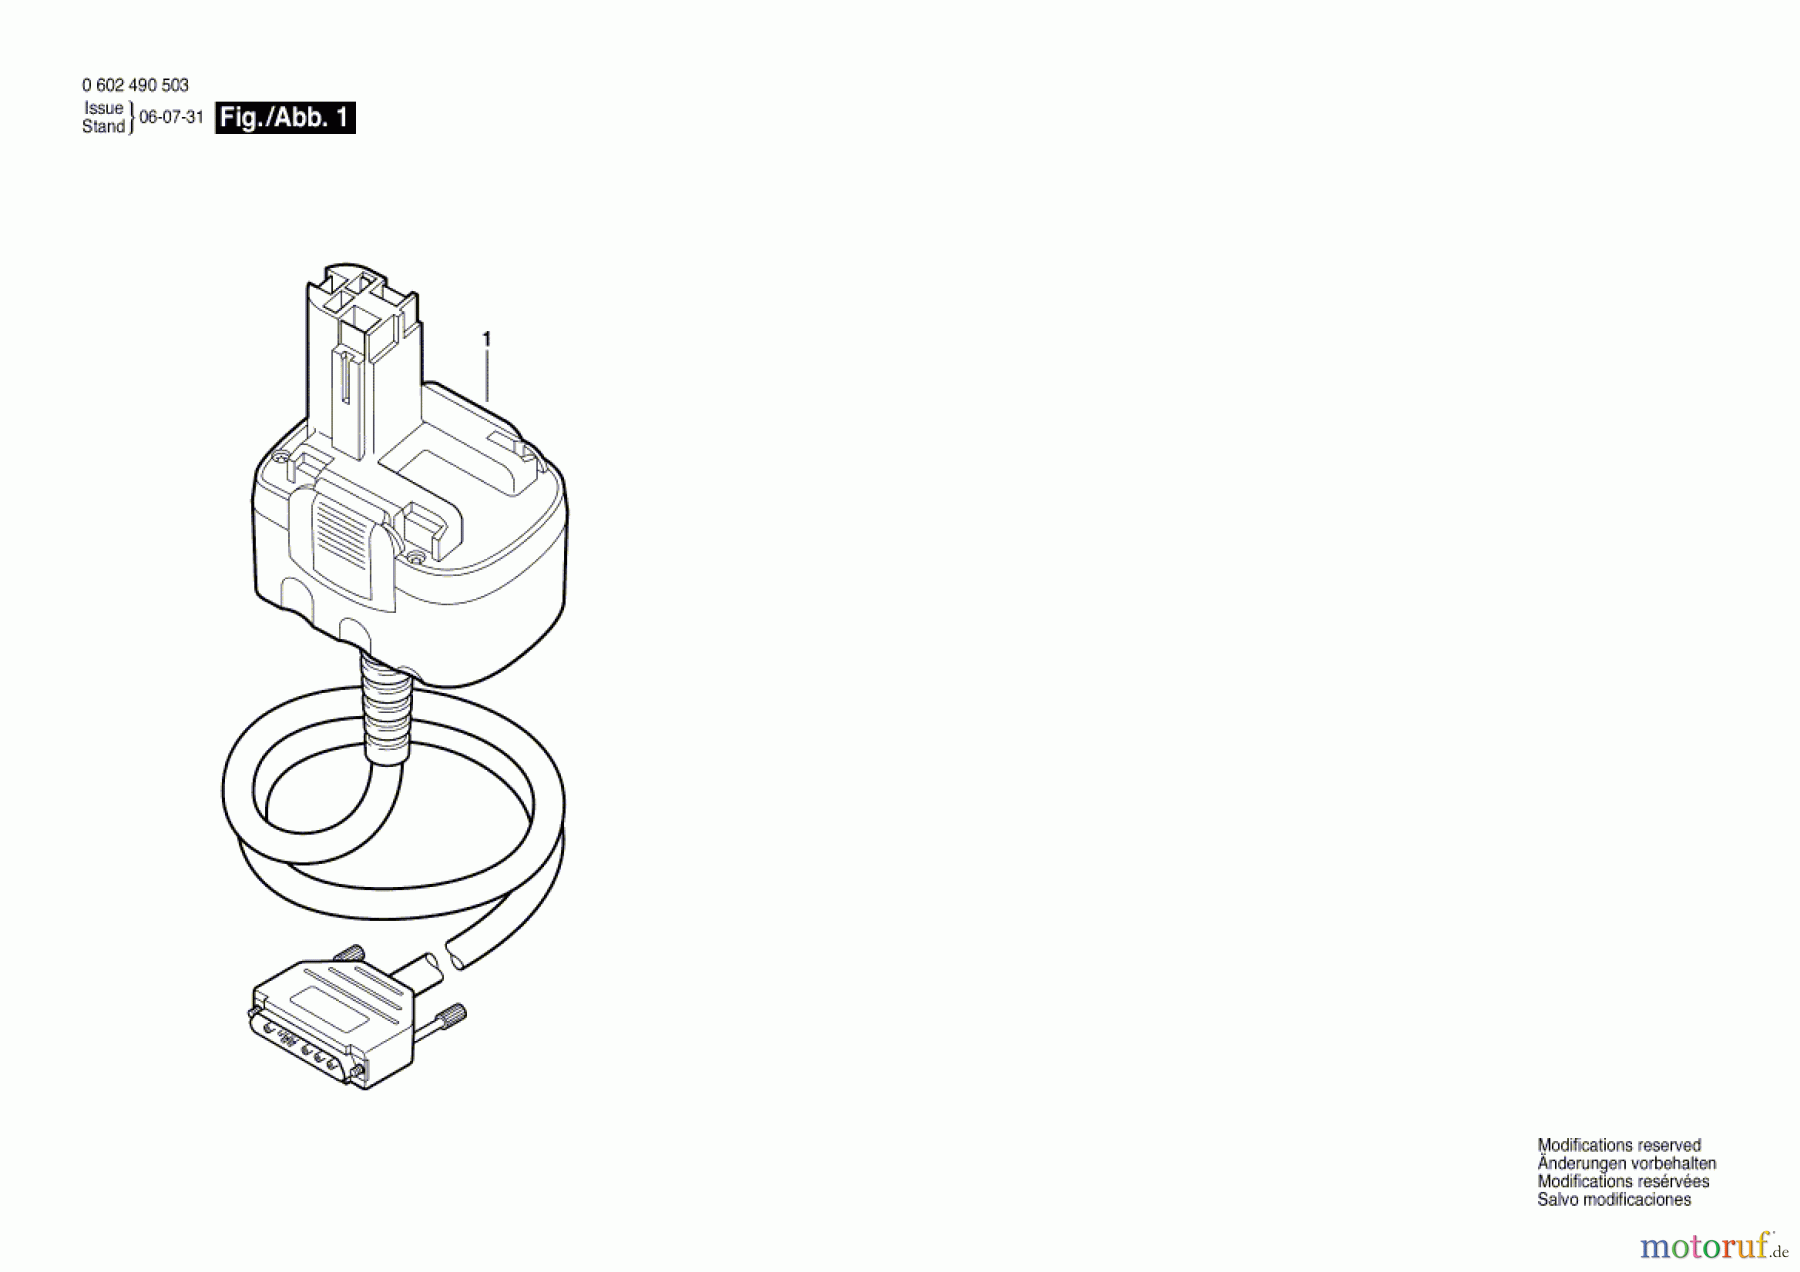  Bosch Werkzeug Adapterleitung 4 EXACT Seite 1